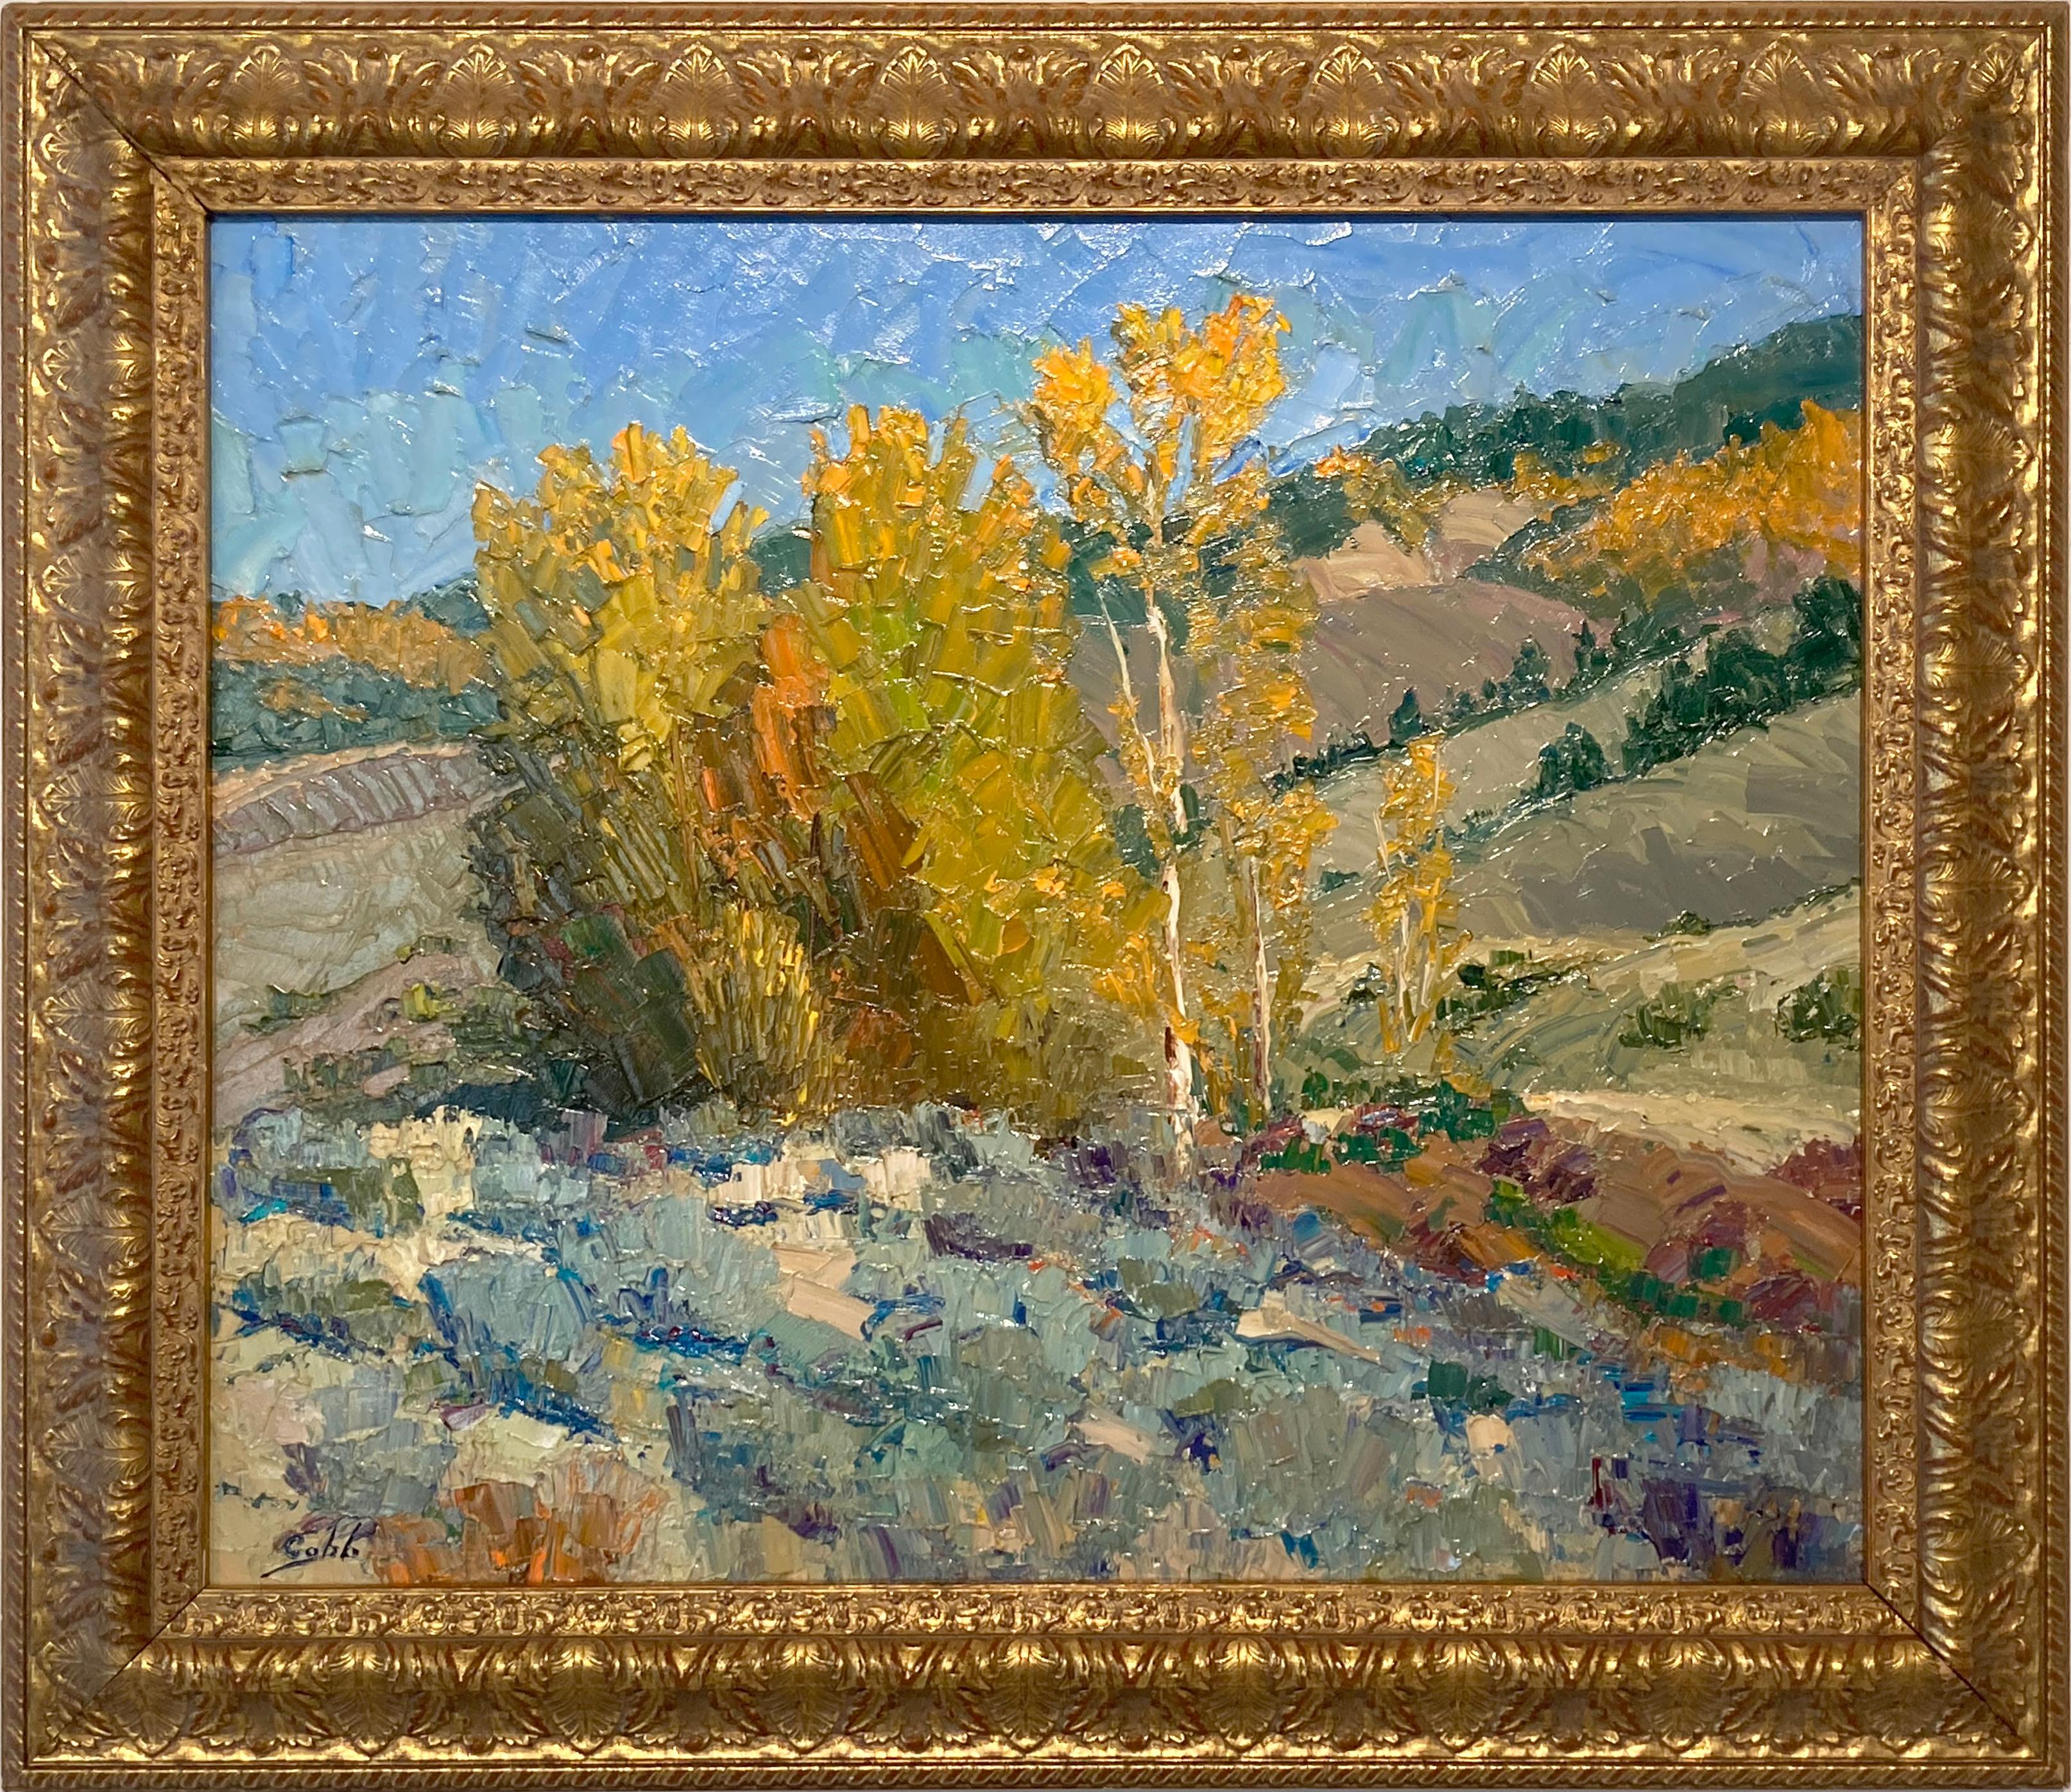 Cette peinture à l'huile sur toile de l'artiste James Cobb représente les tremblaies pittoresques que l'on trouve le long des flancs des montagnes du Colorado. L'utilisation du couteau à palette par Cobb permet d'accentuer la variété des textures de